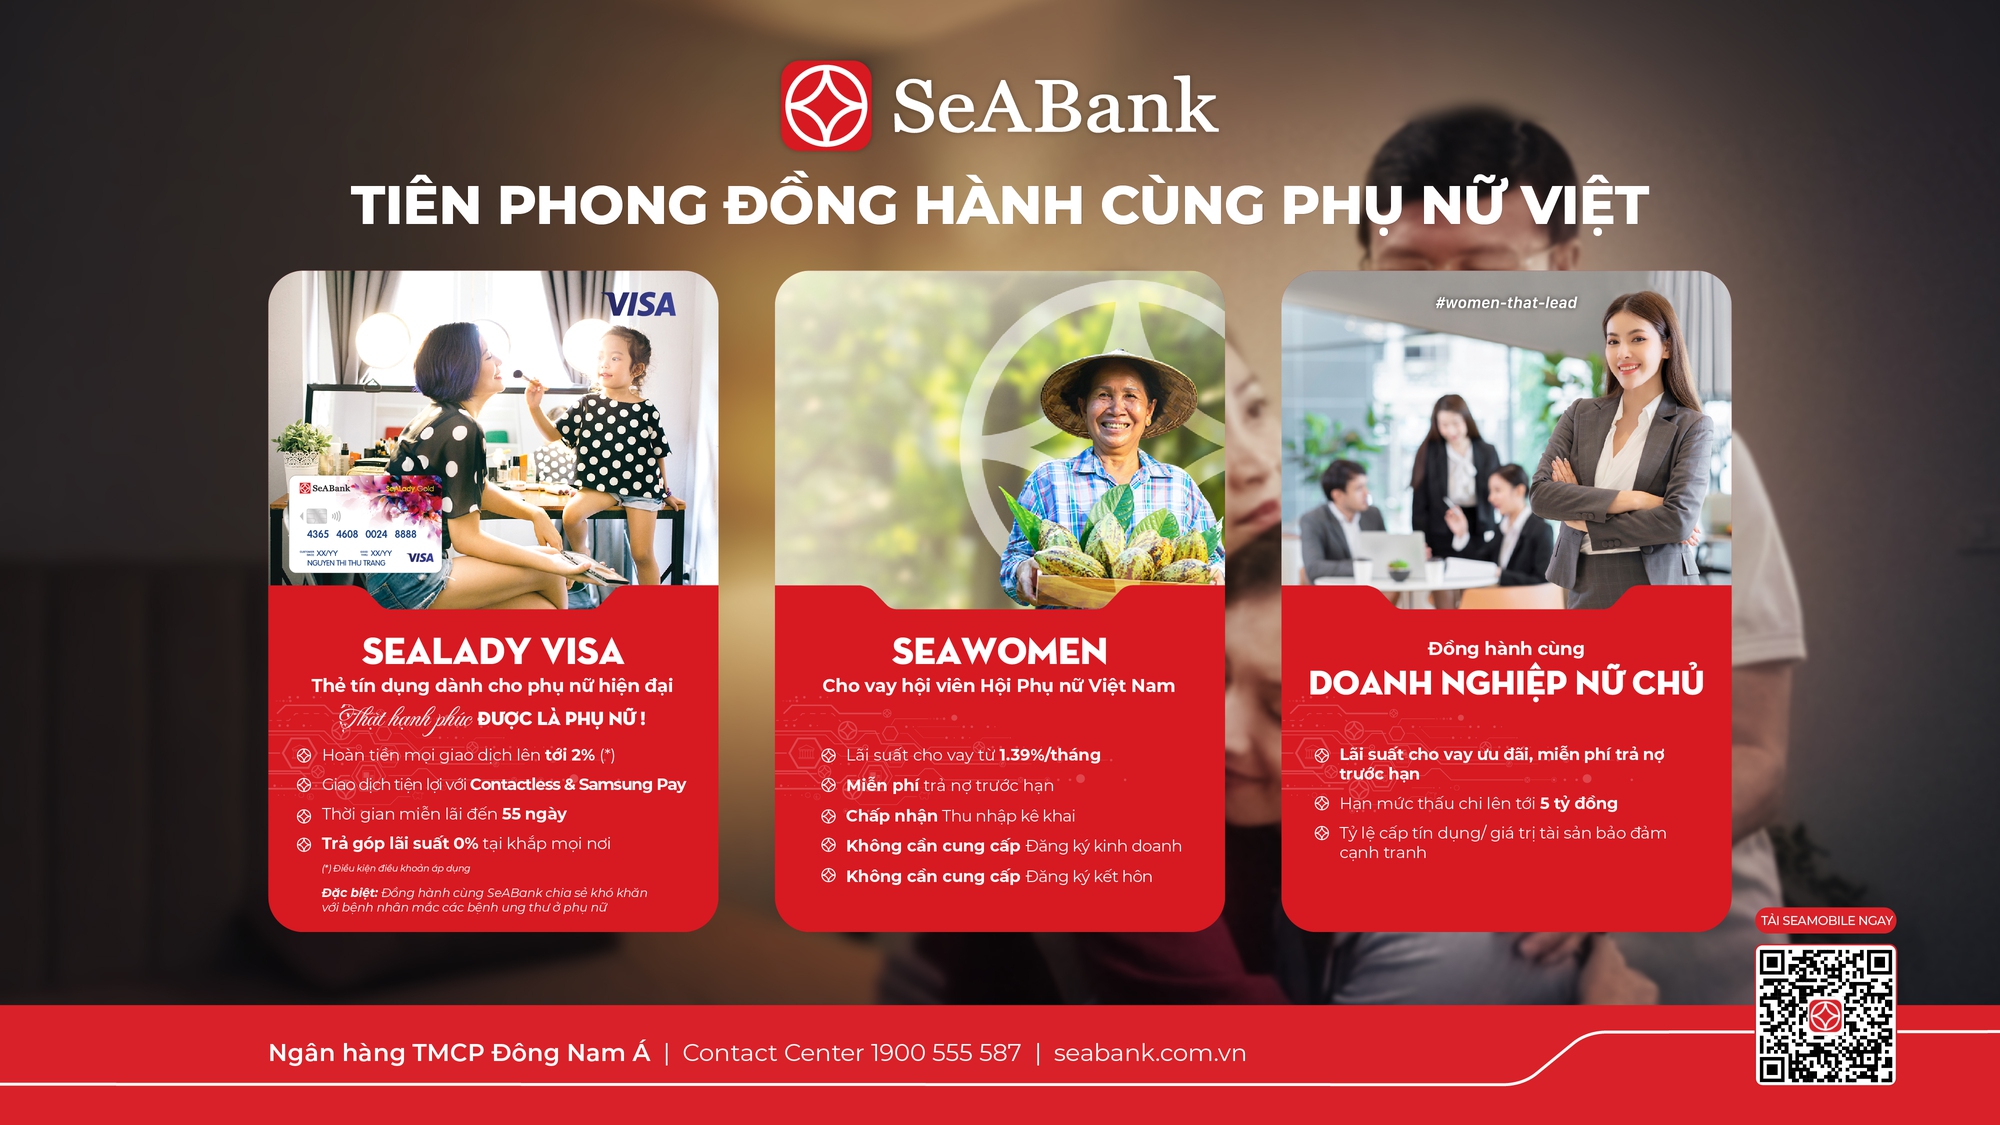 SeABank tiên phong đồng hành phụ nữ, góp phần đề cao giá trị của kết nối tình thân trong ngày gia đình Việt Nam - Ảnh 2.